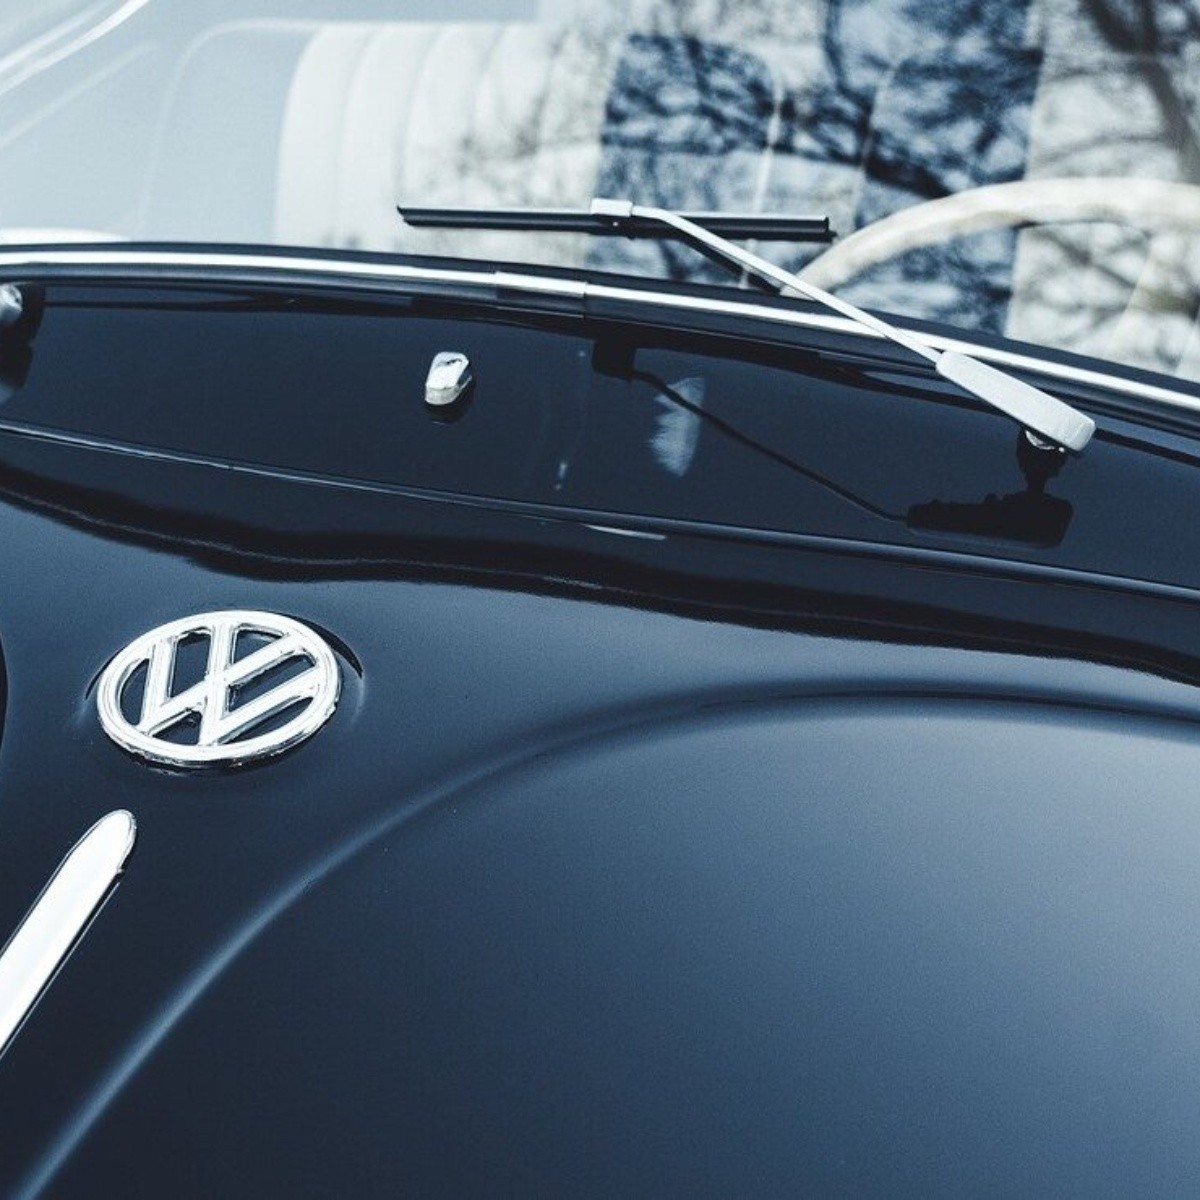 Los Mejores 5 Autos Usados Volkswagen Que Puedes Comprar 100 Mil Pesos O Menos Este 2023 En México 2217